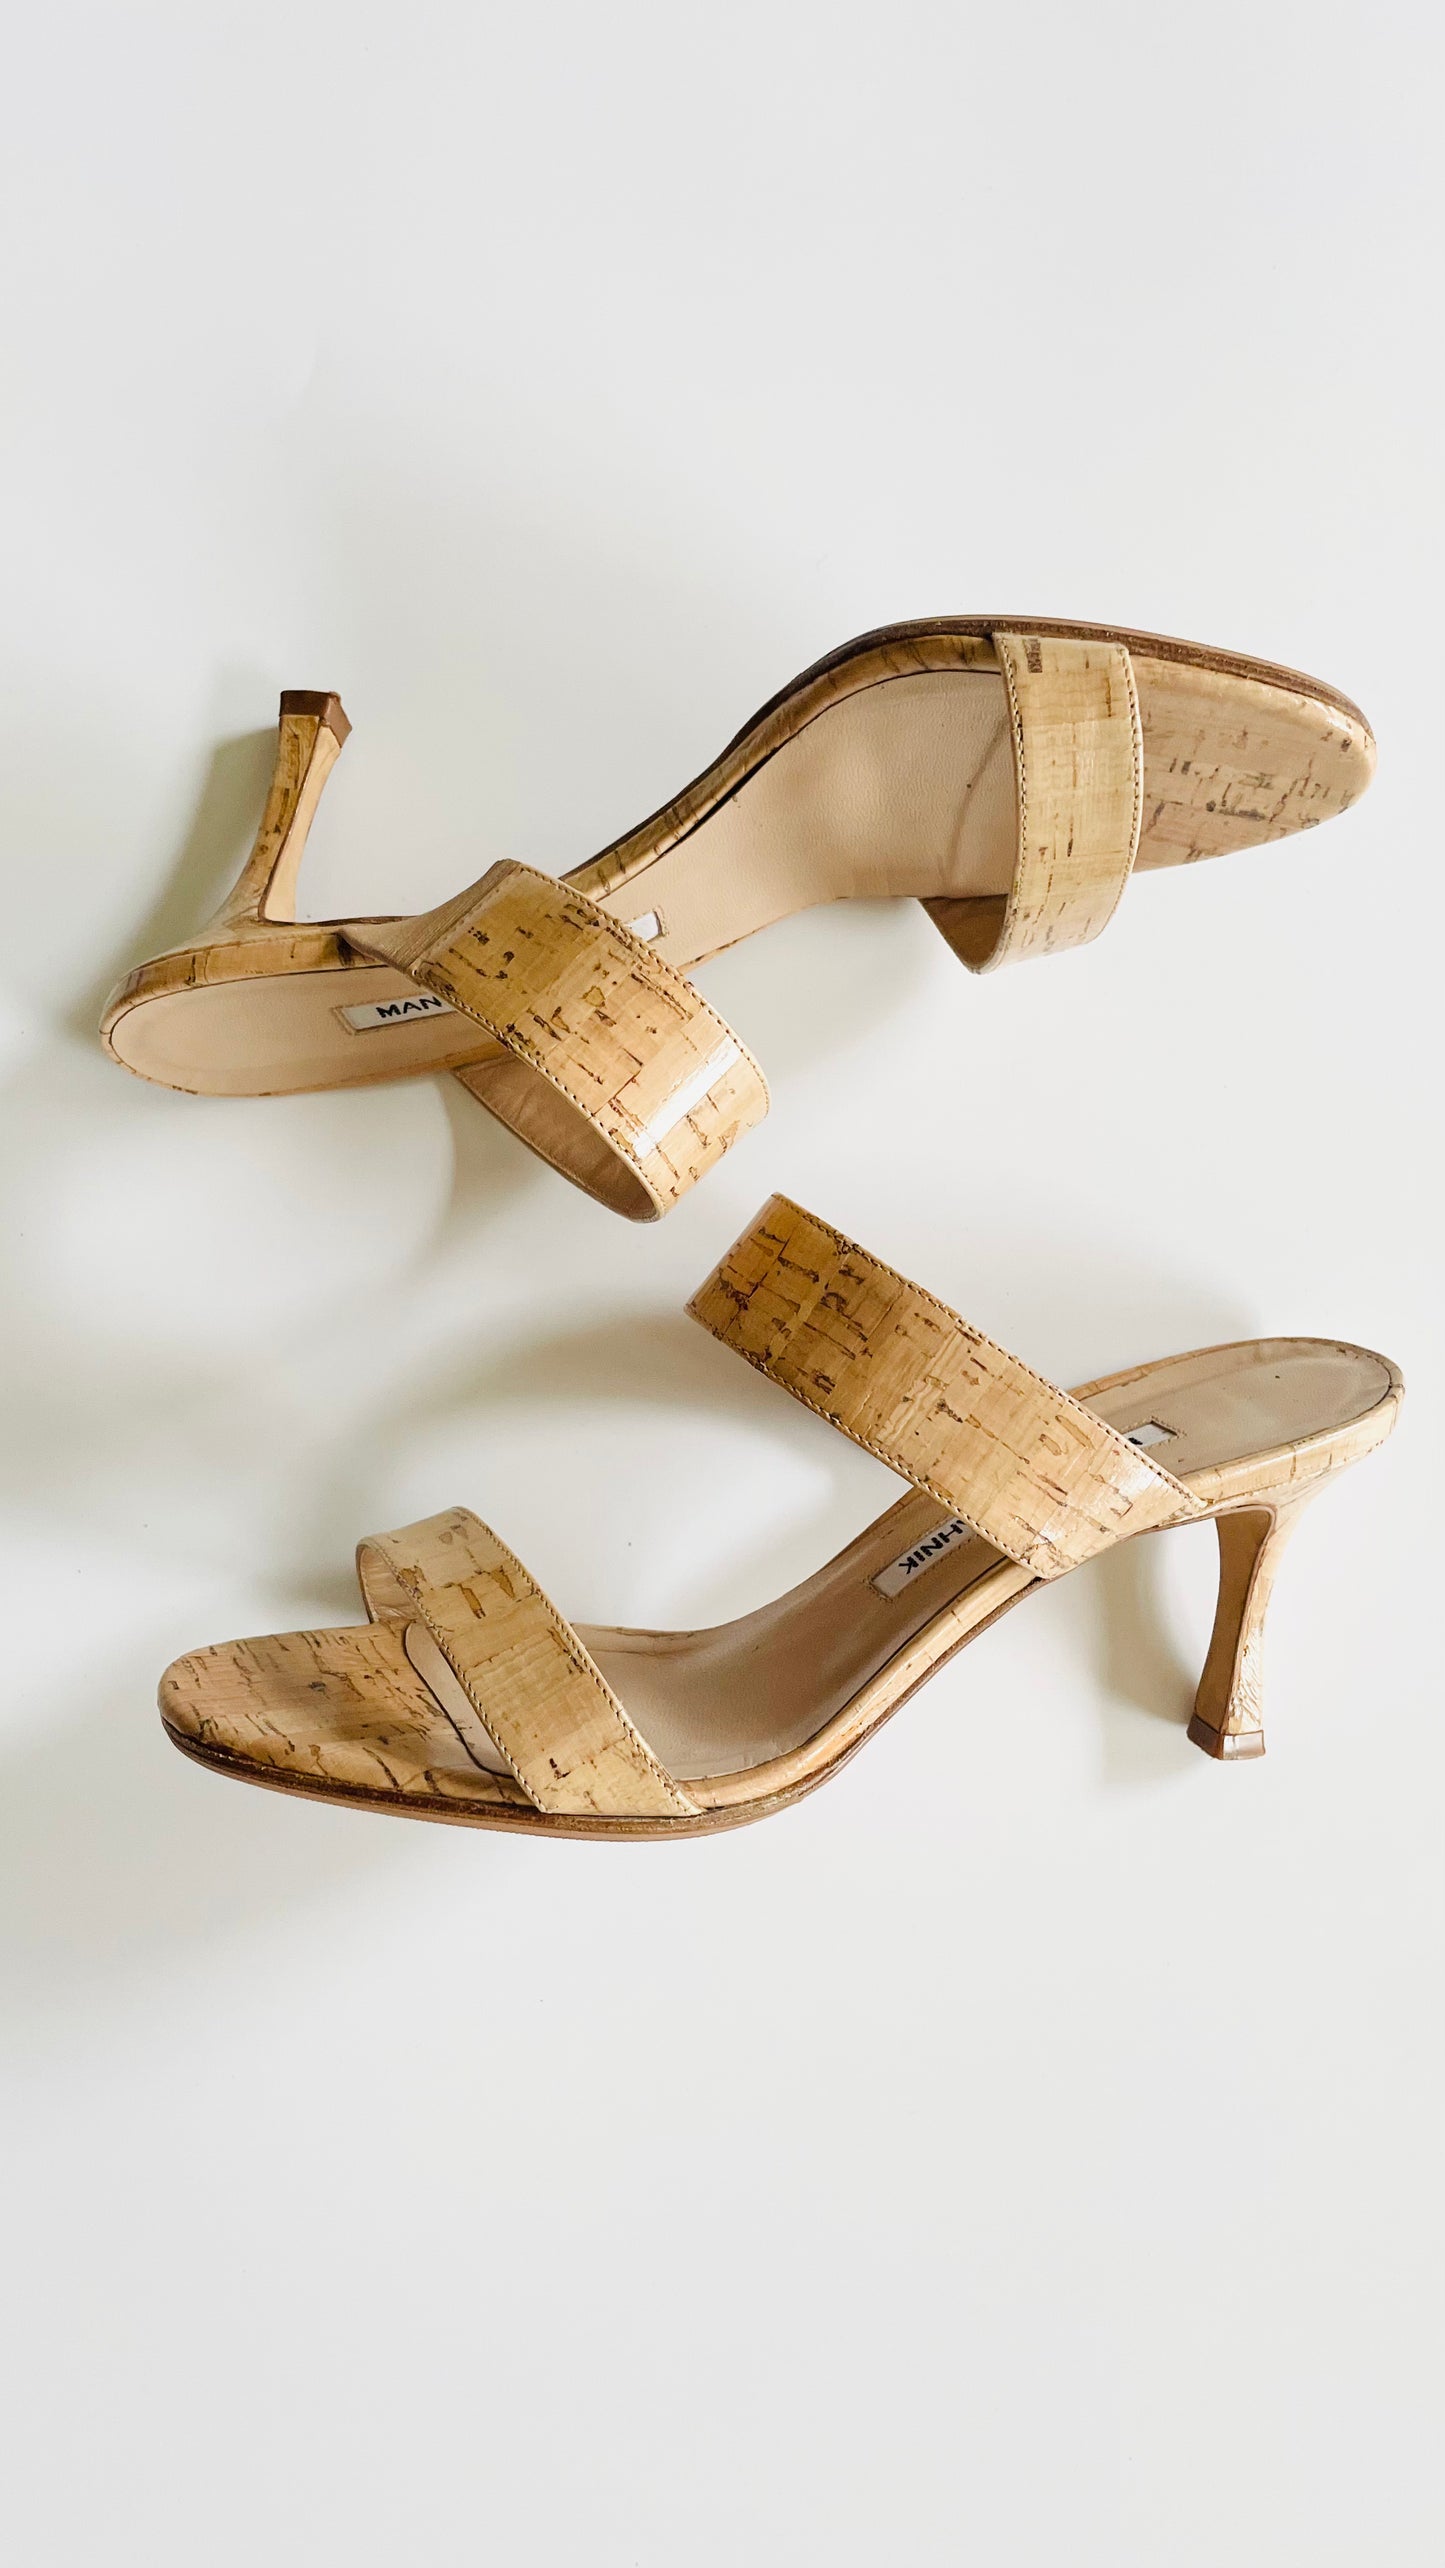 Pre-Loved Manolo Blahnik cork heels - Size 36